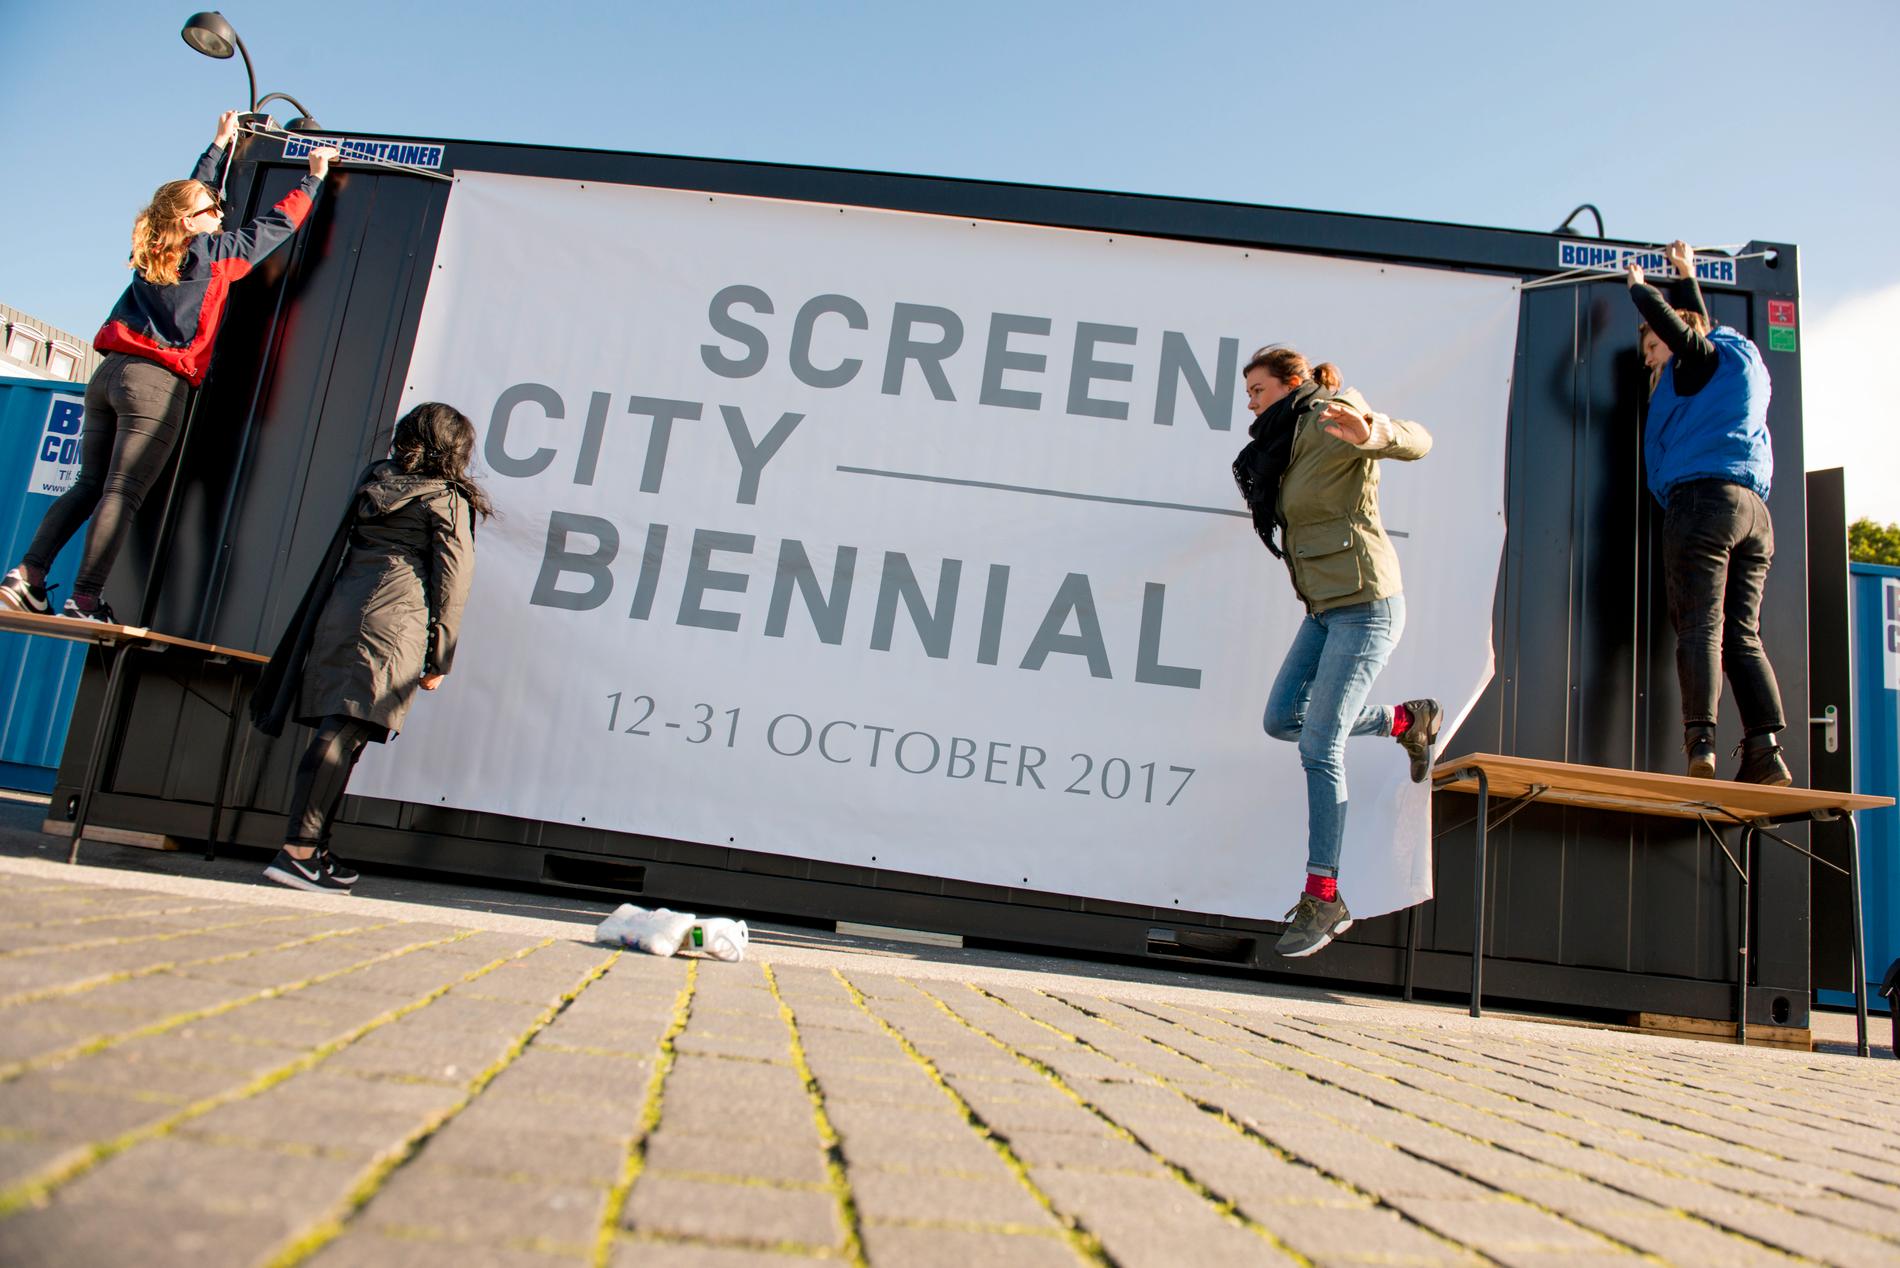  Ved å bruke mobilen og applikasjoner som lastes ned, kan man se kunst i Stavanger by som egentlig ikke er der.  